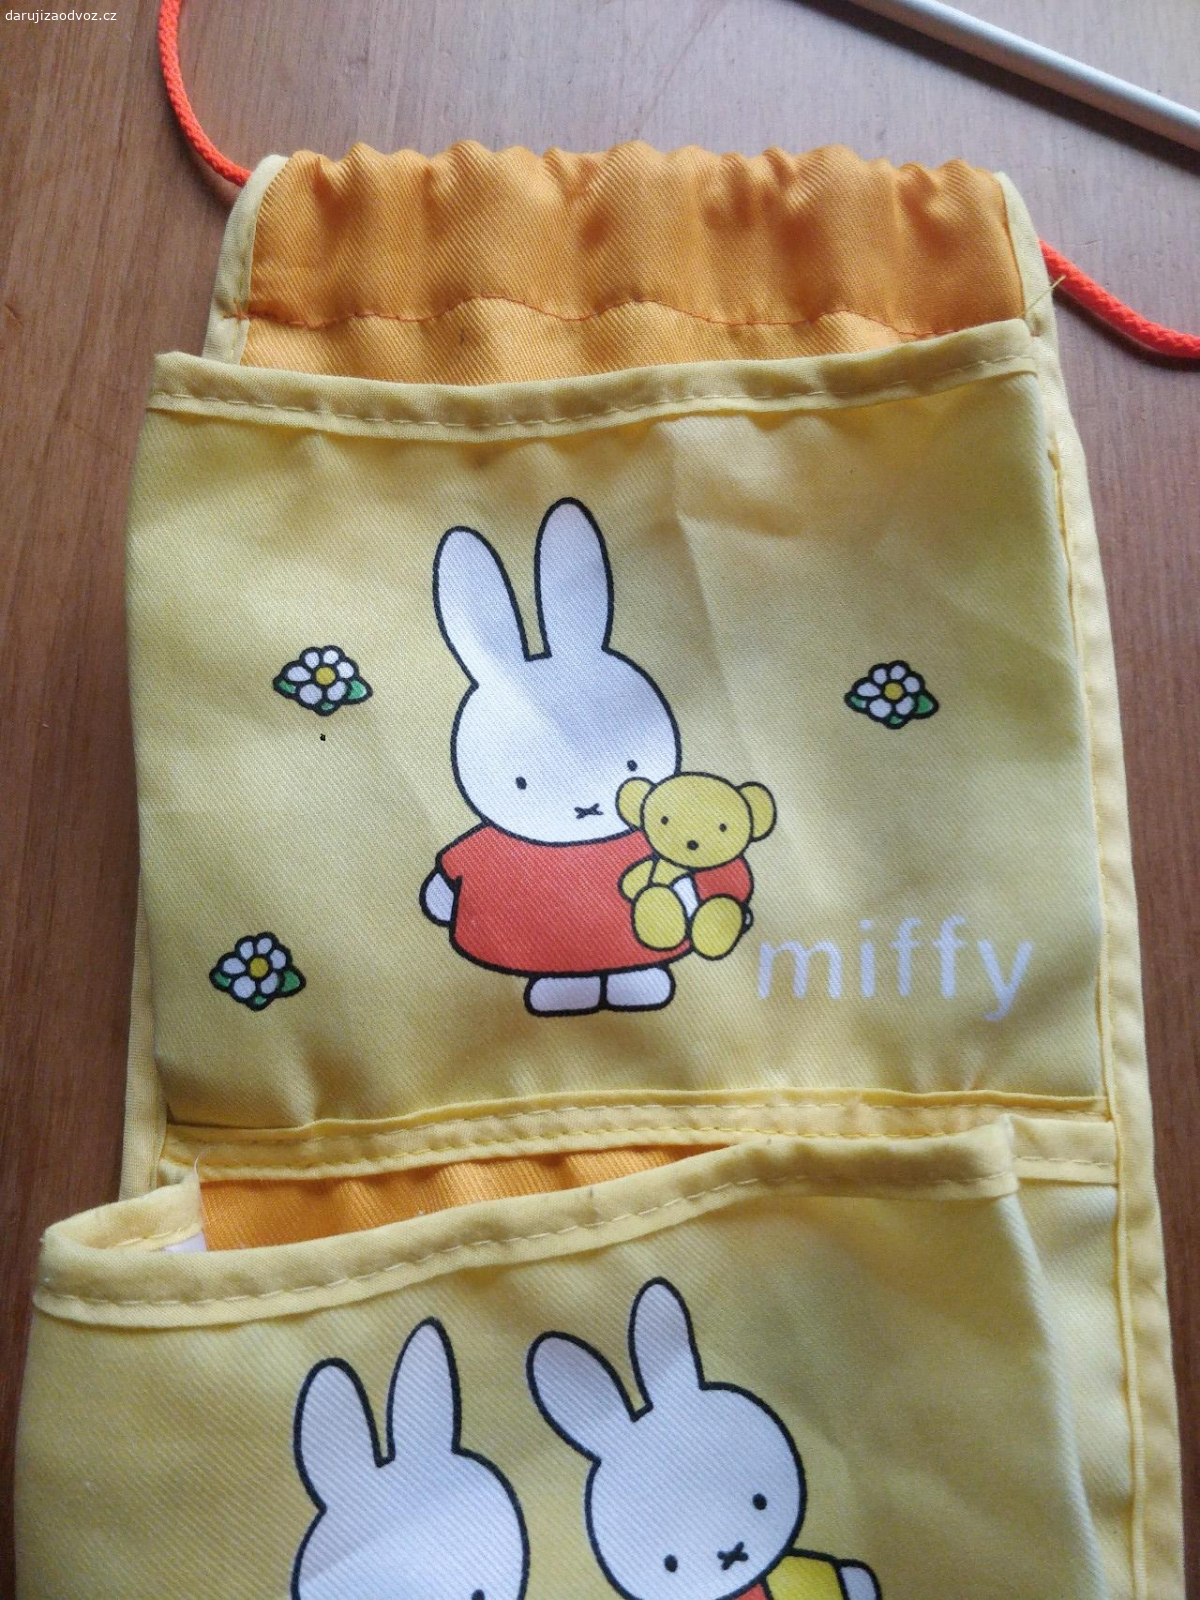 Kapsář. Dětský kapsář Miffy, rozměry 68×17 cm, 5 kapes.